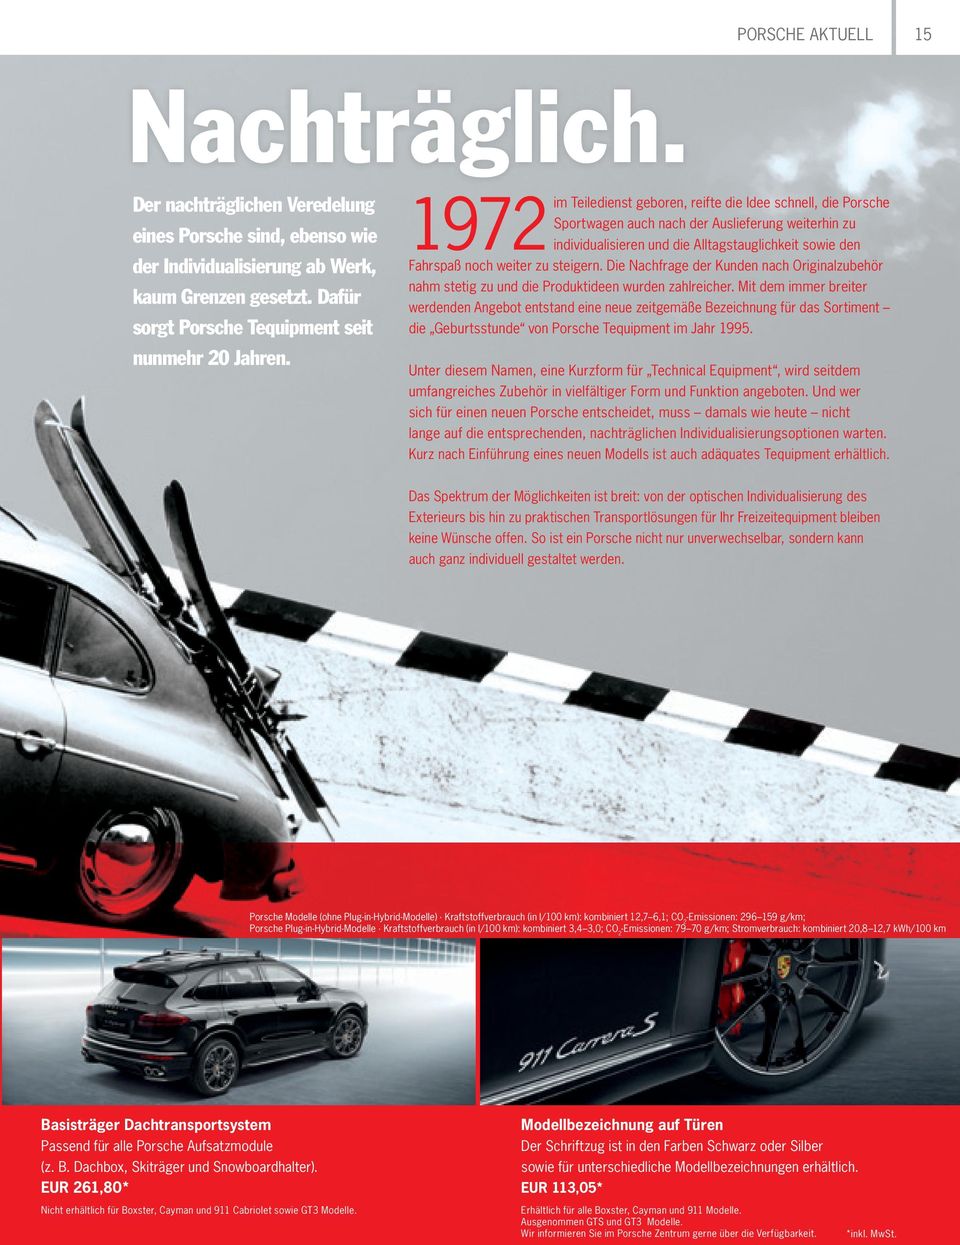 1972 im Teiledienst geboren, reifte die Idee schnell, die Porsche Sportwagen auch nach der Auslieferung weiterhin zu individualisieren und die Alltagstauglichkeit sowie den Fahrspaß noch weiter zu